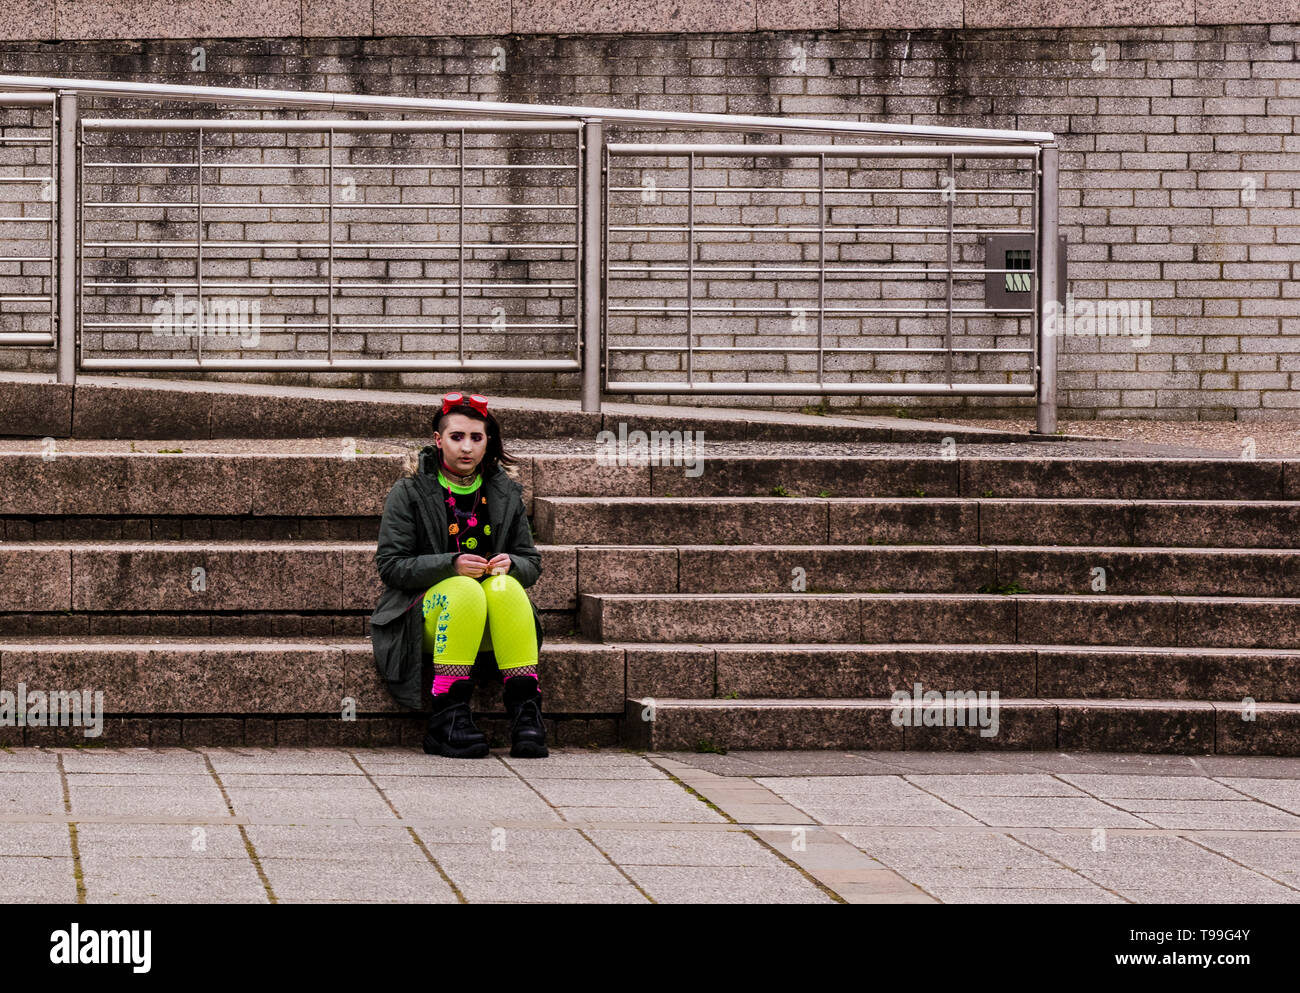 Giovane donna che indossa abiti colorati, seduti sui gradini, espressione triste, Quayside, Newcastle upon Tyne, England, Regno Unito Foto Stock